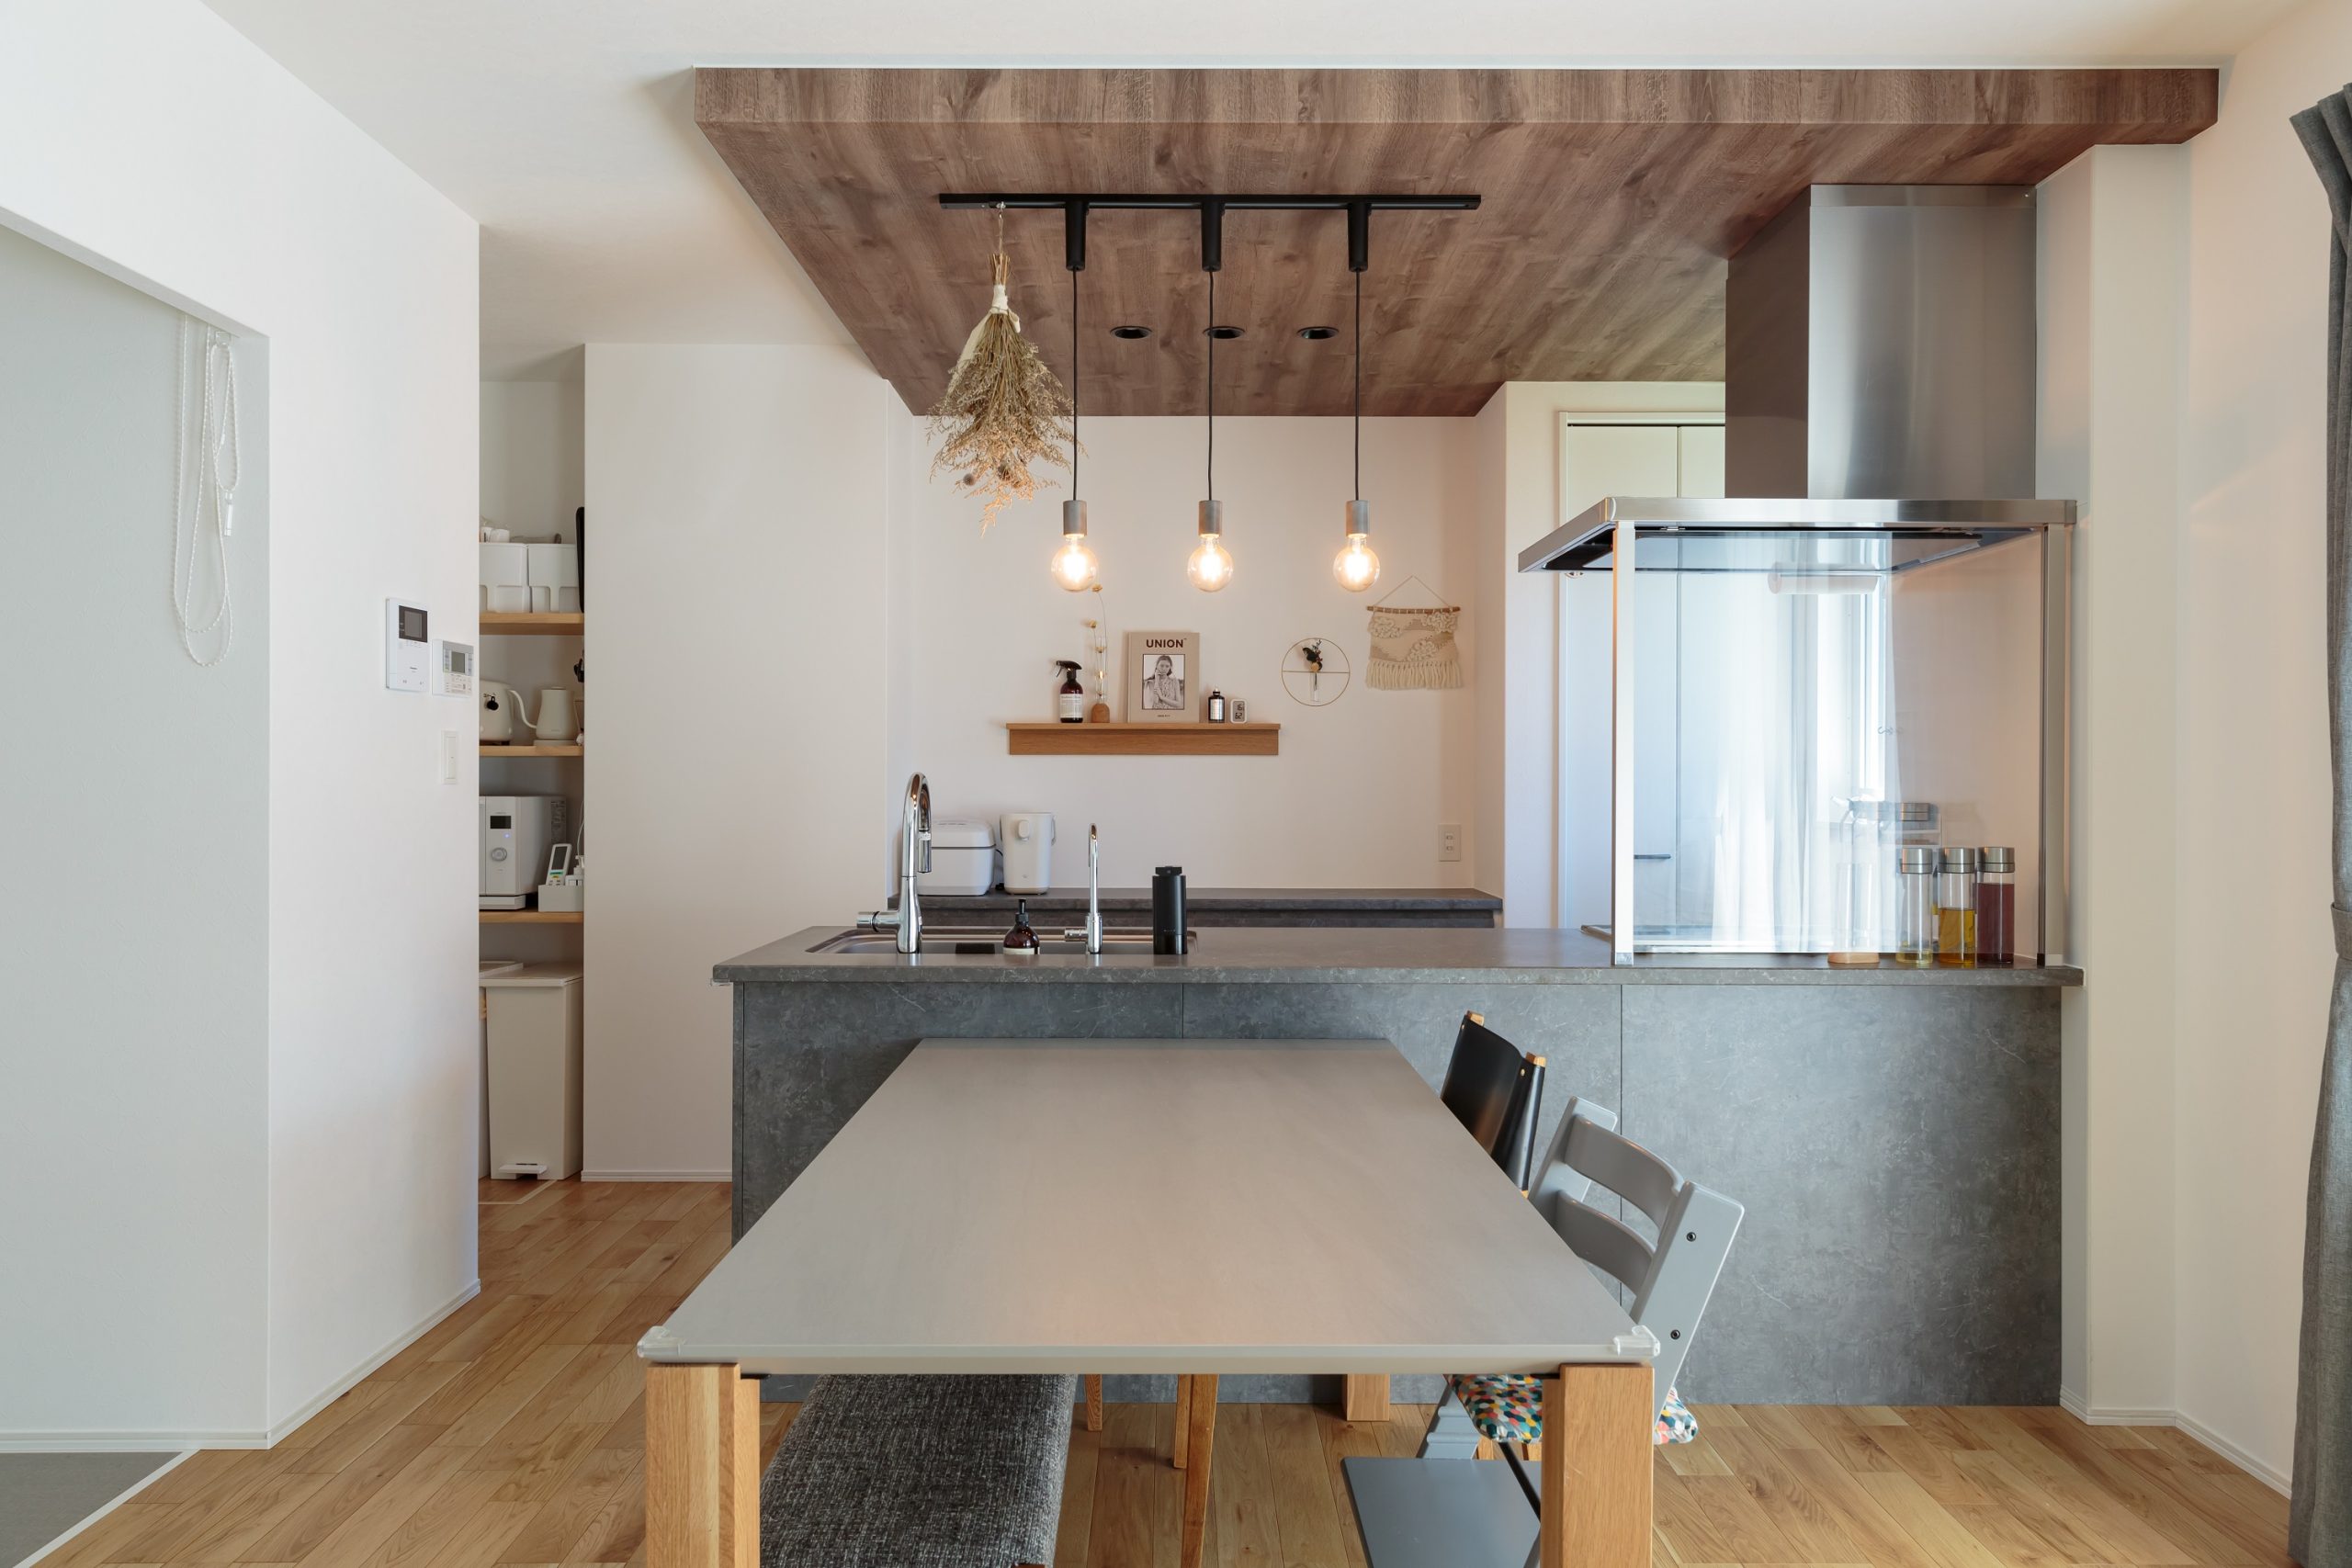 モルタル風キッチンが映えるようキッチン背面は白い壁ですっきりと、木目の下がり天井をアクセントに加えました。ダイニングテーブルもキッチンに質感を合わせてトータルコーディネートしています。